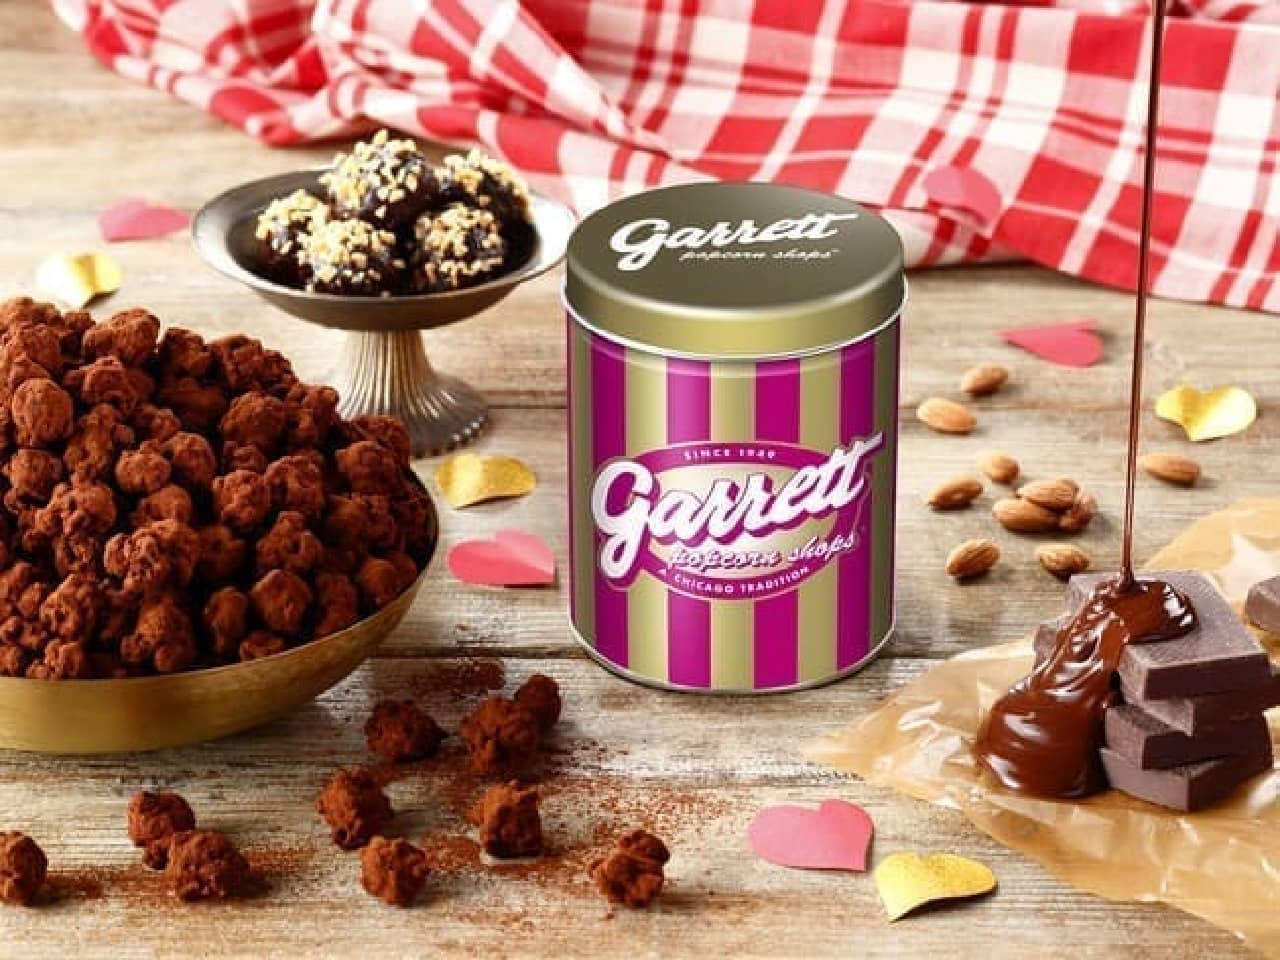 ギャレット ポップコーン ショップス「アーモンド チョコレートトリュフ」と「Candy Pink缶」